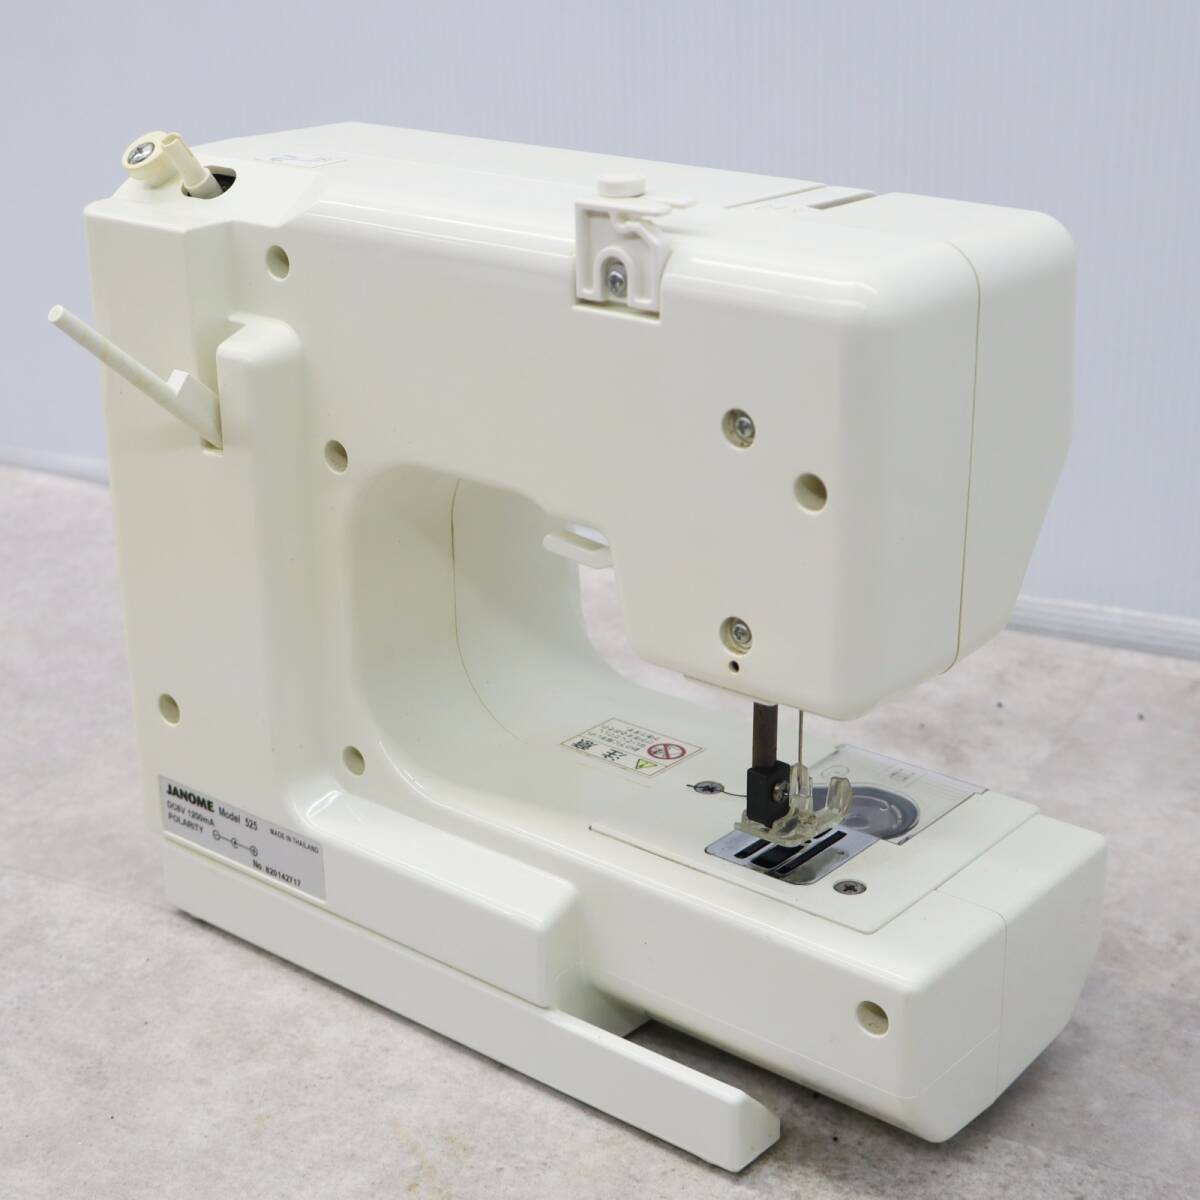 * простой рабочее состояние подтверждено retro редкий редкость l Hello Kitty швейная машина lJANOME Janome KT-35 l #P2864